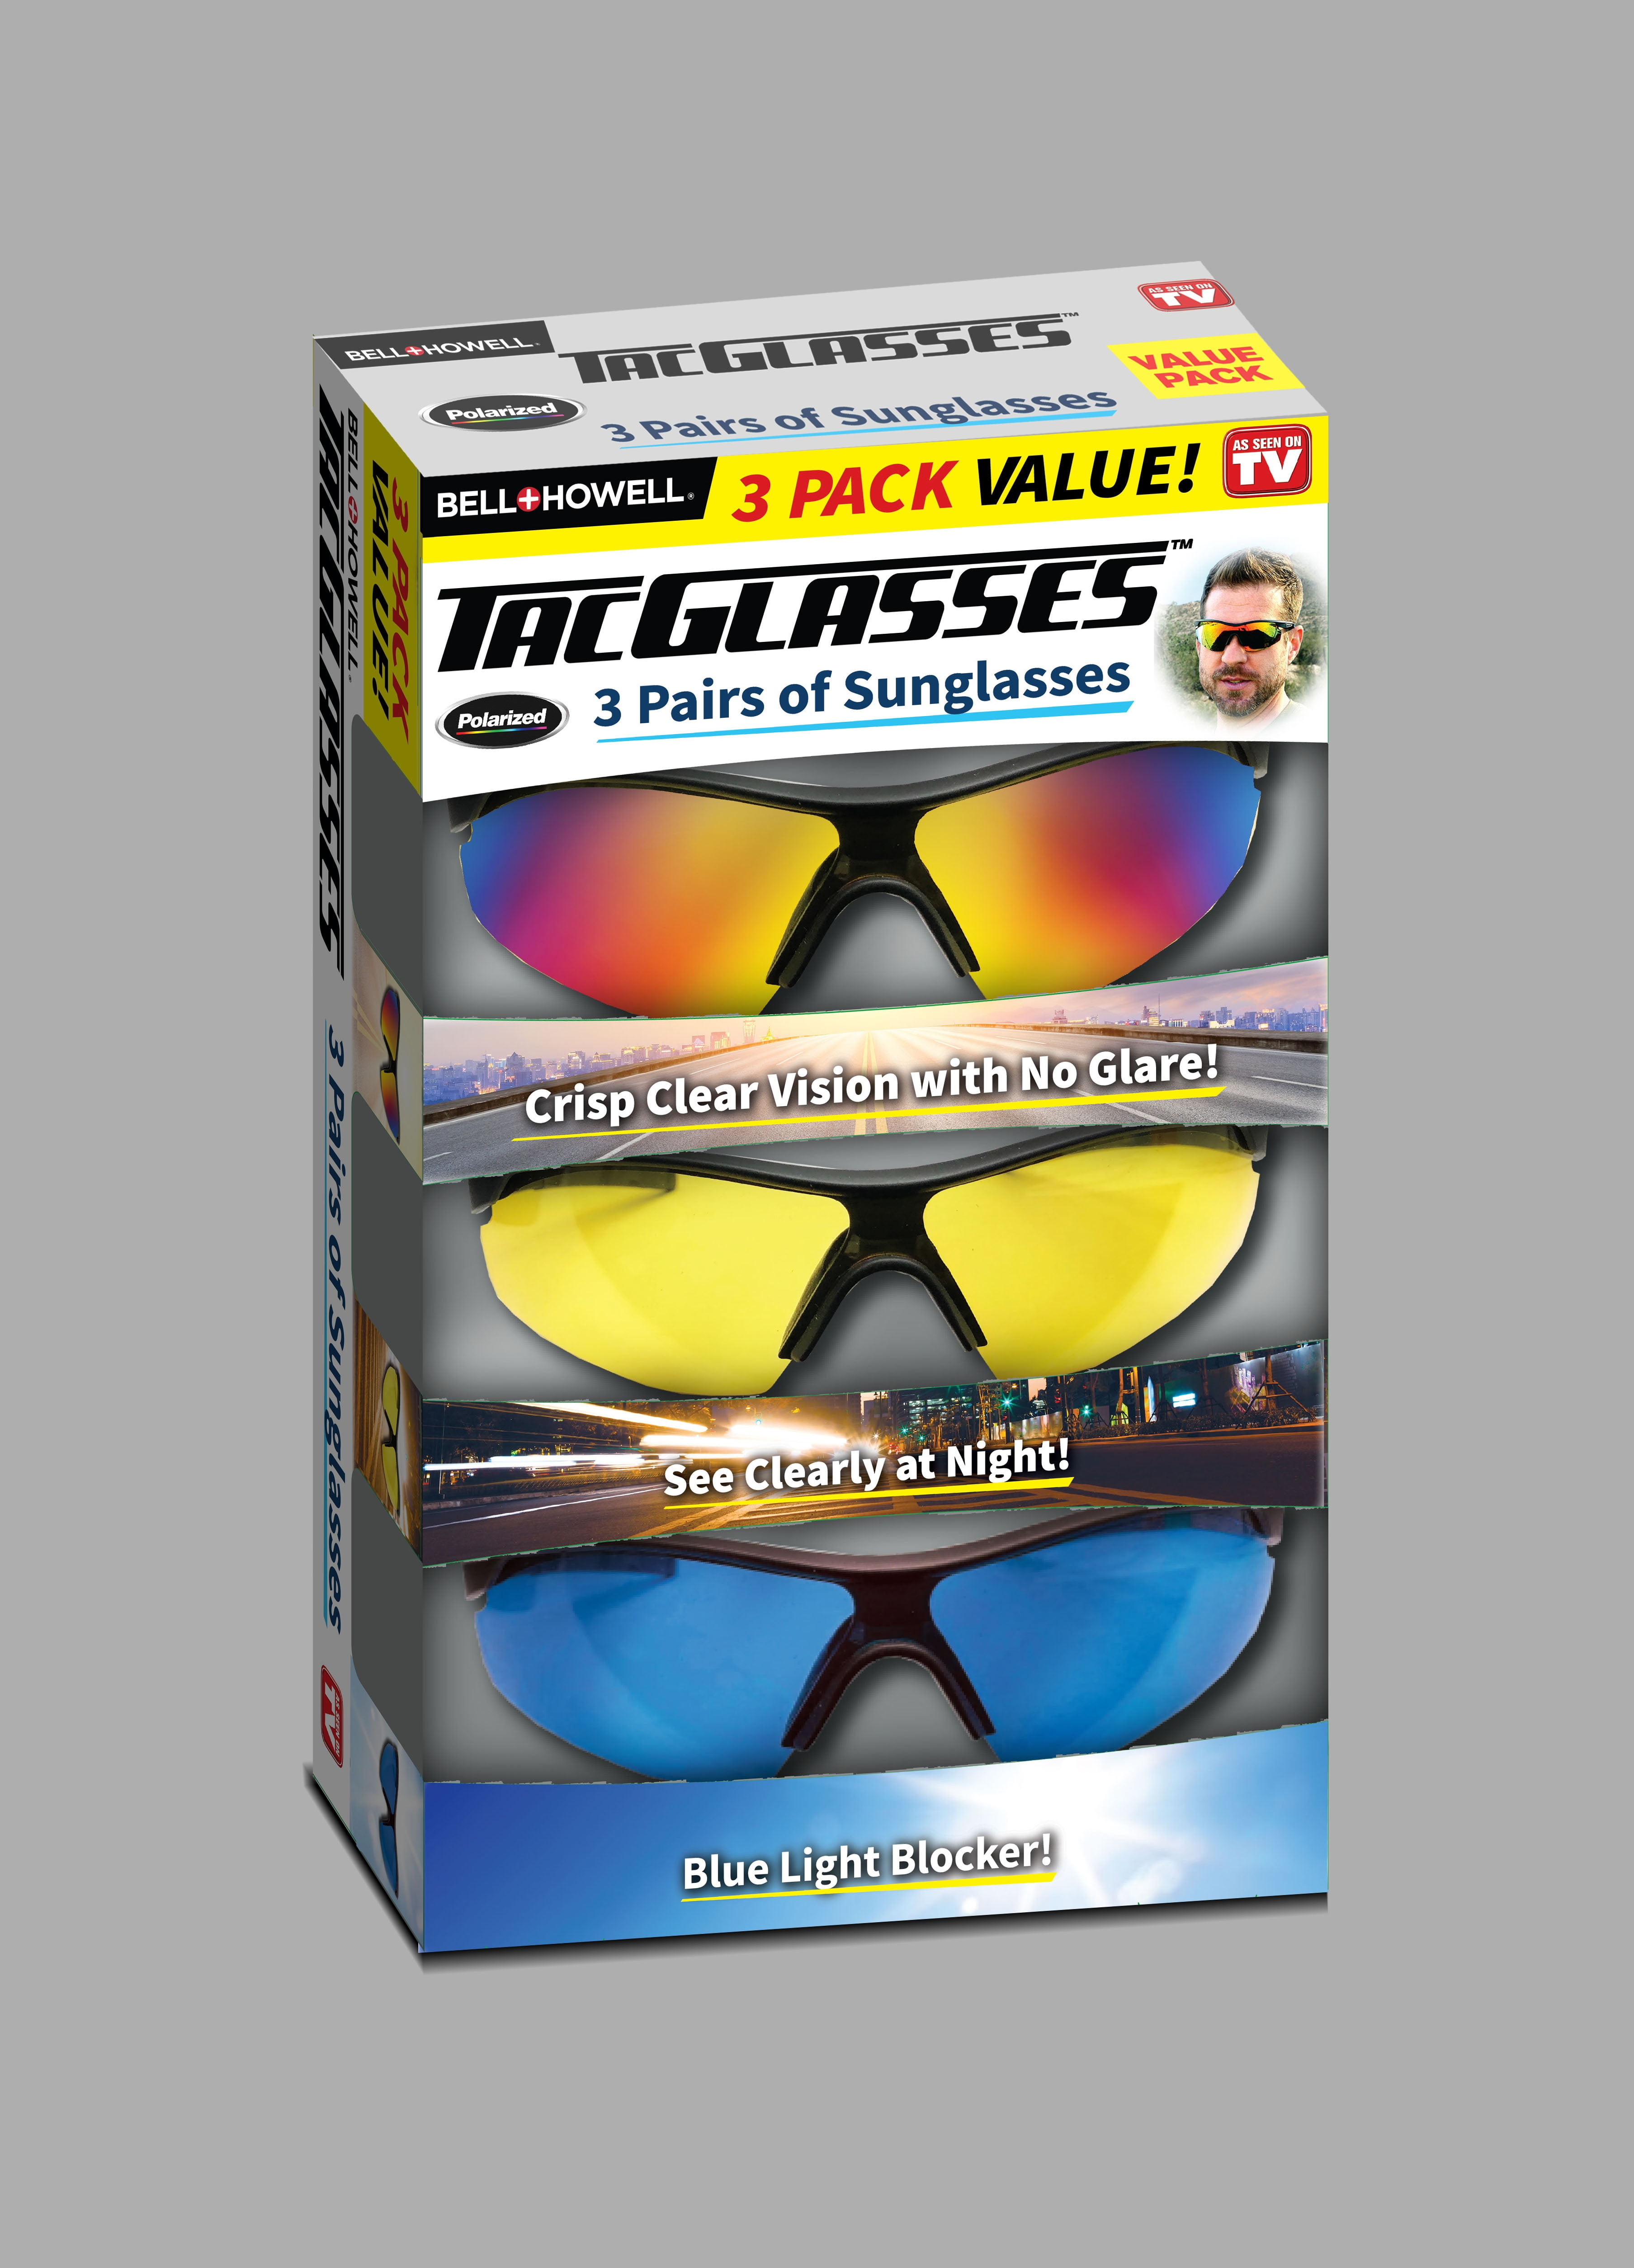 Bell+howell Tac Glasses 3-Pack Multi